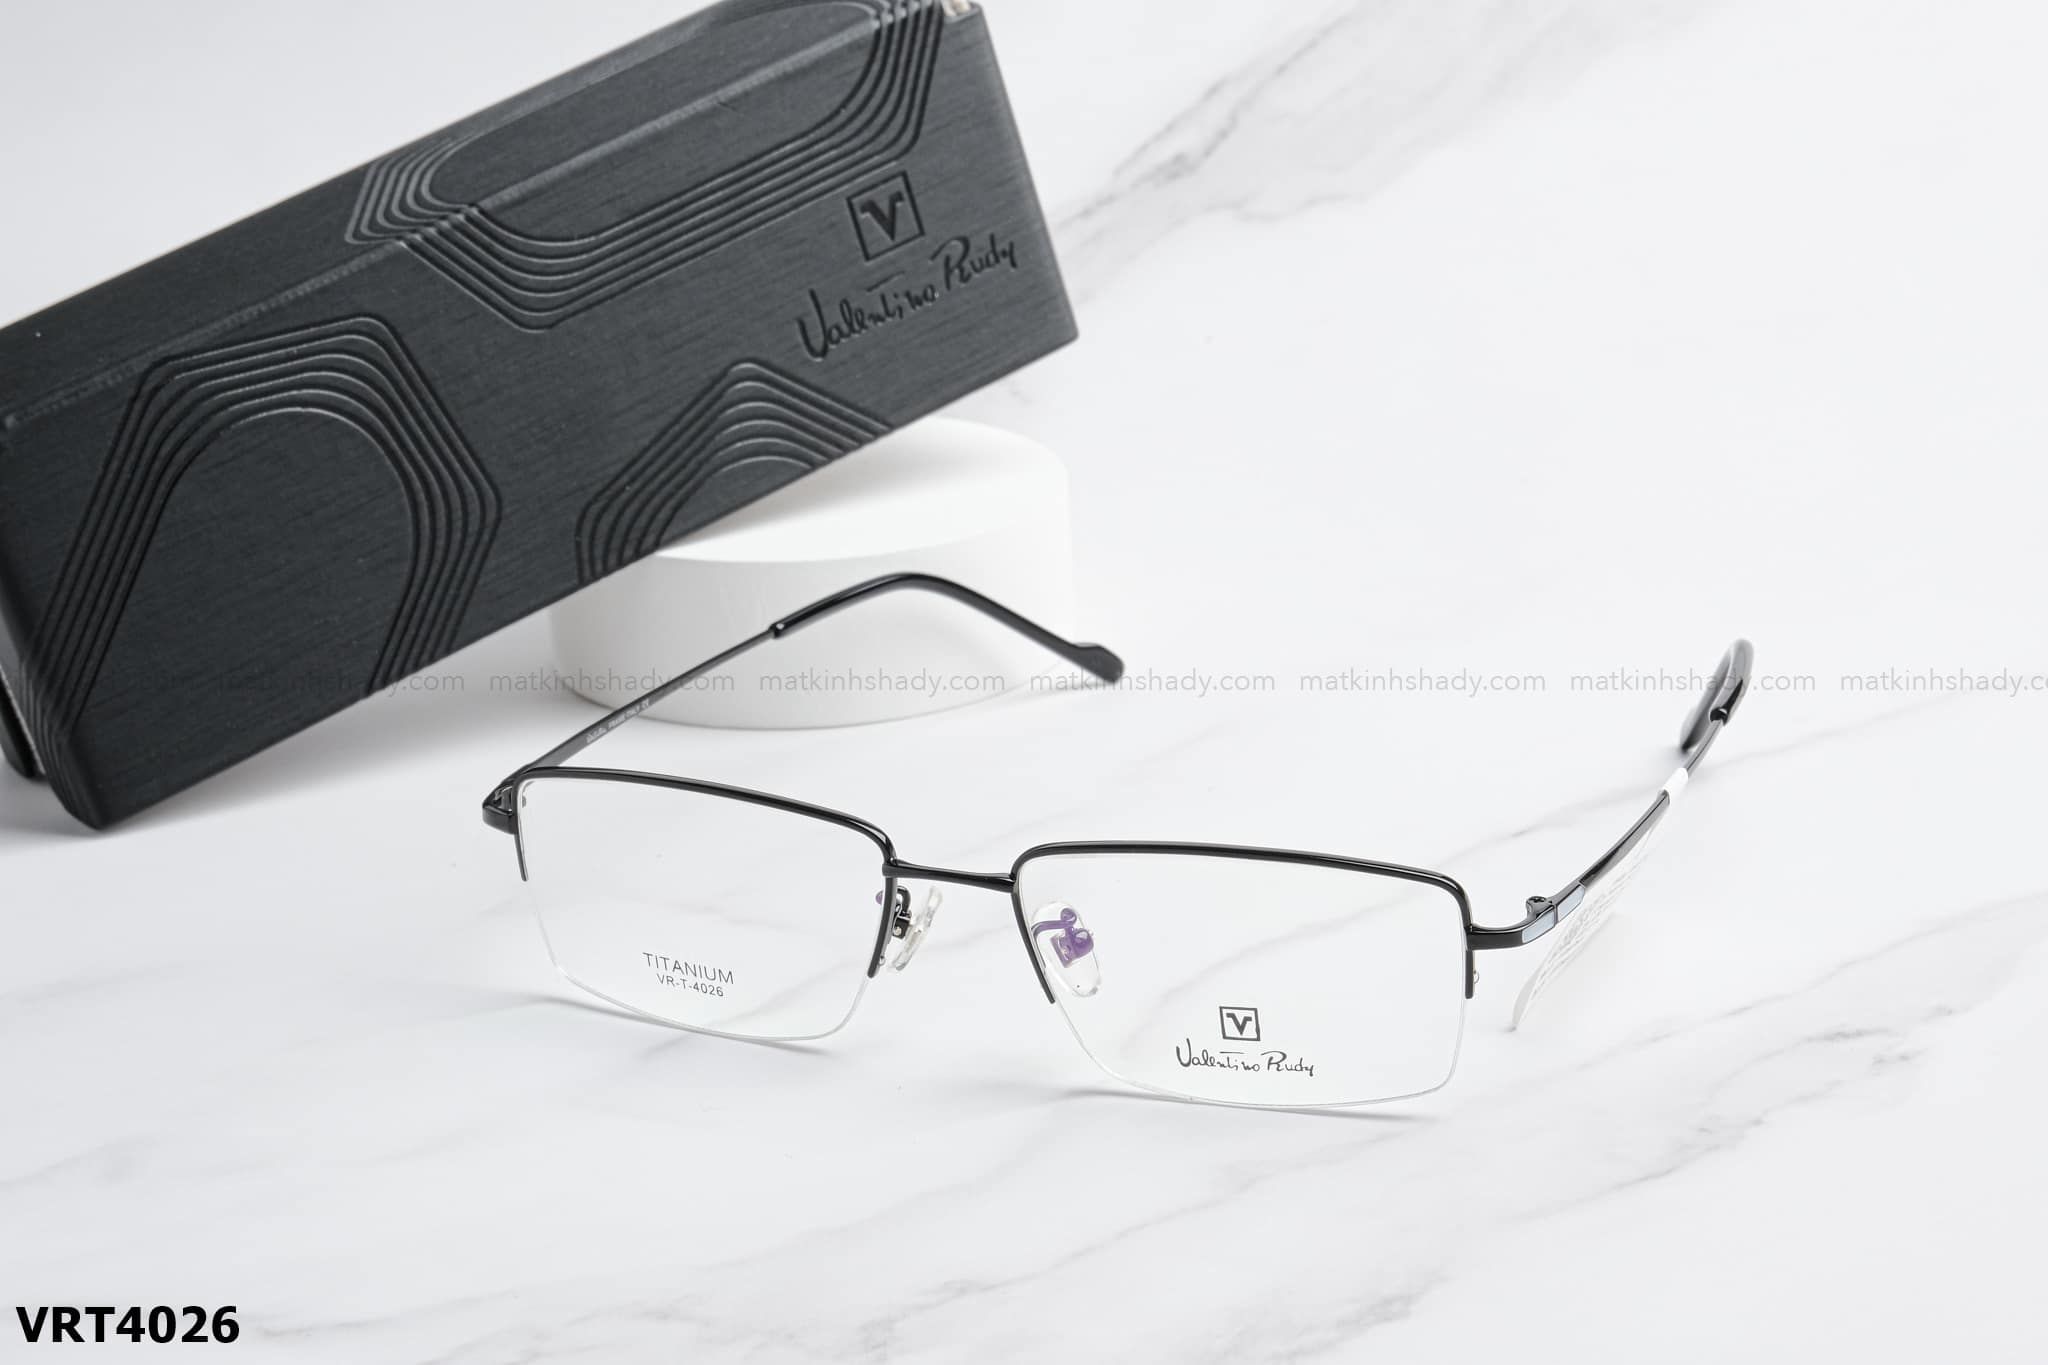  Valentino Eyewear - Glasses - VRT4026 